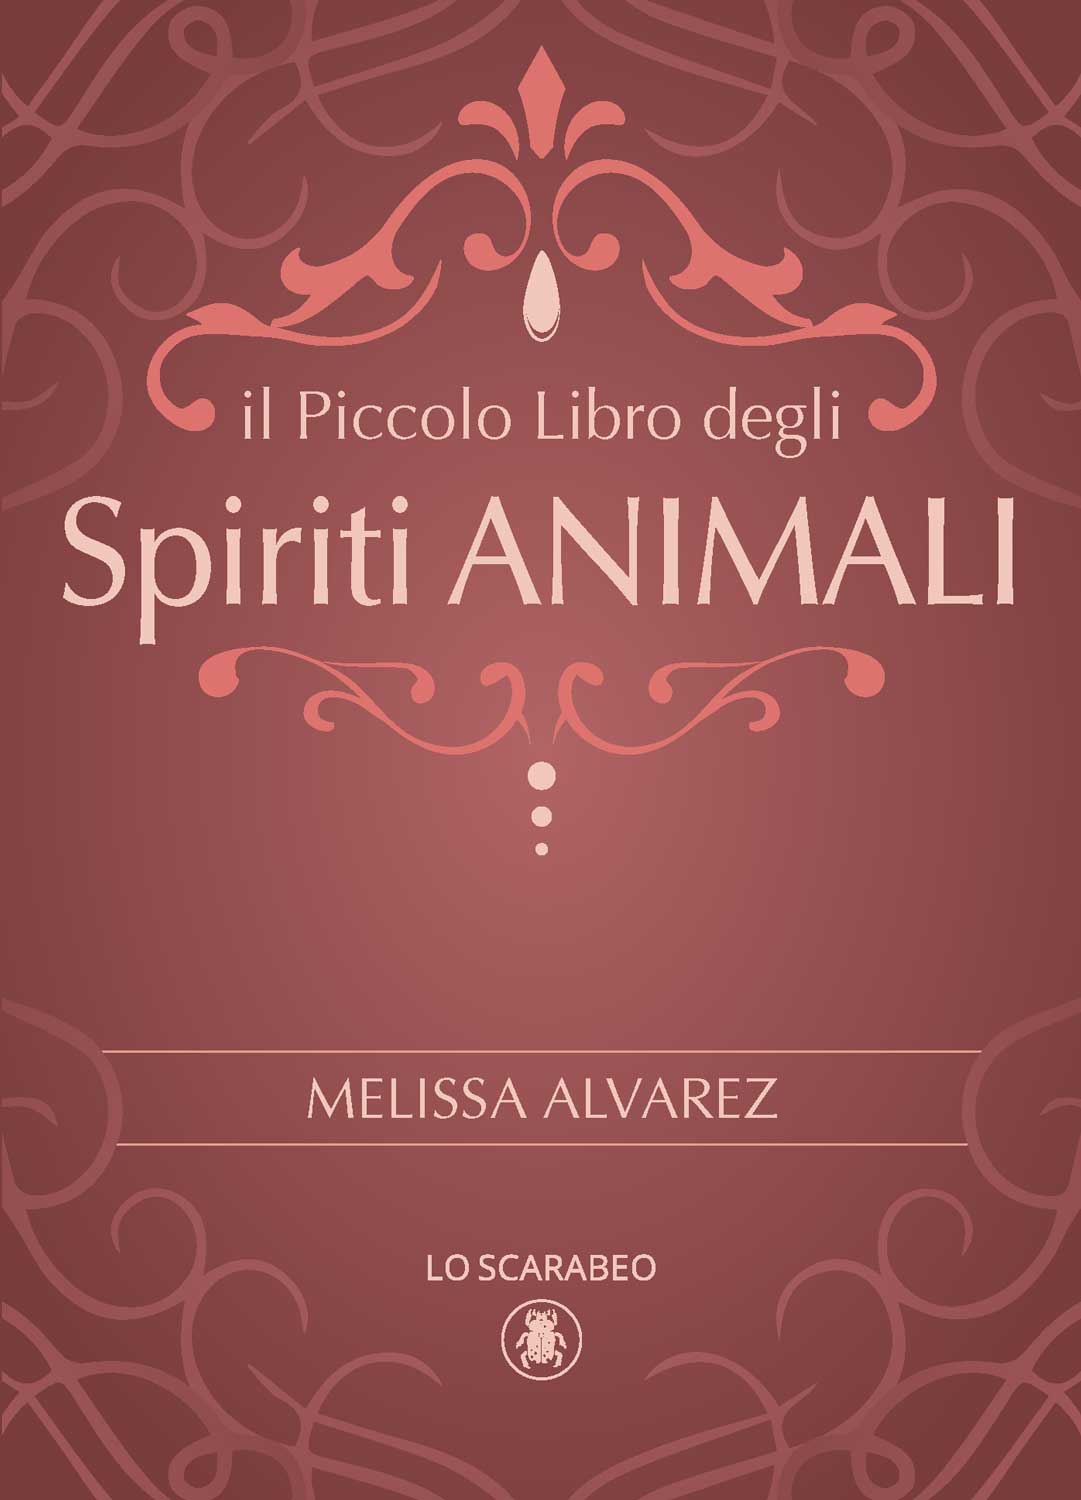 Little Book of Spirit Animals